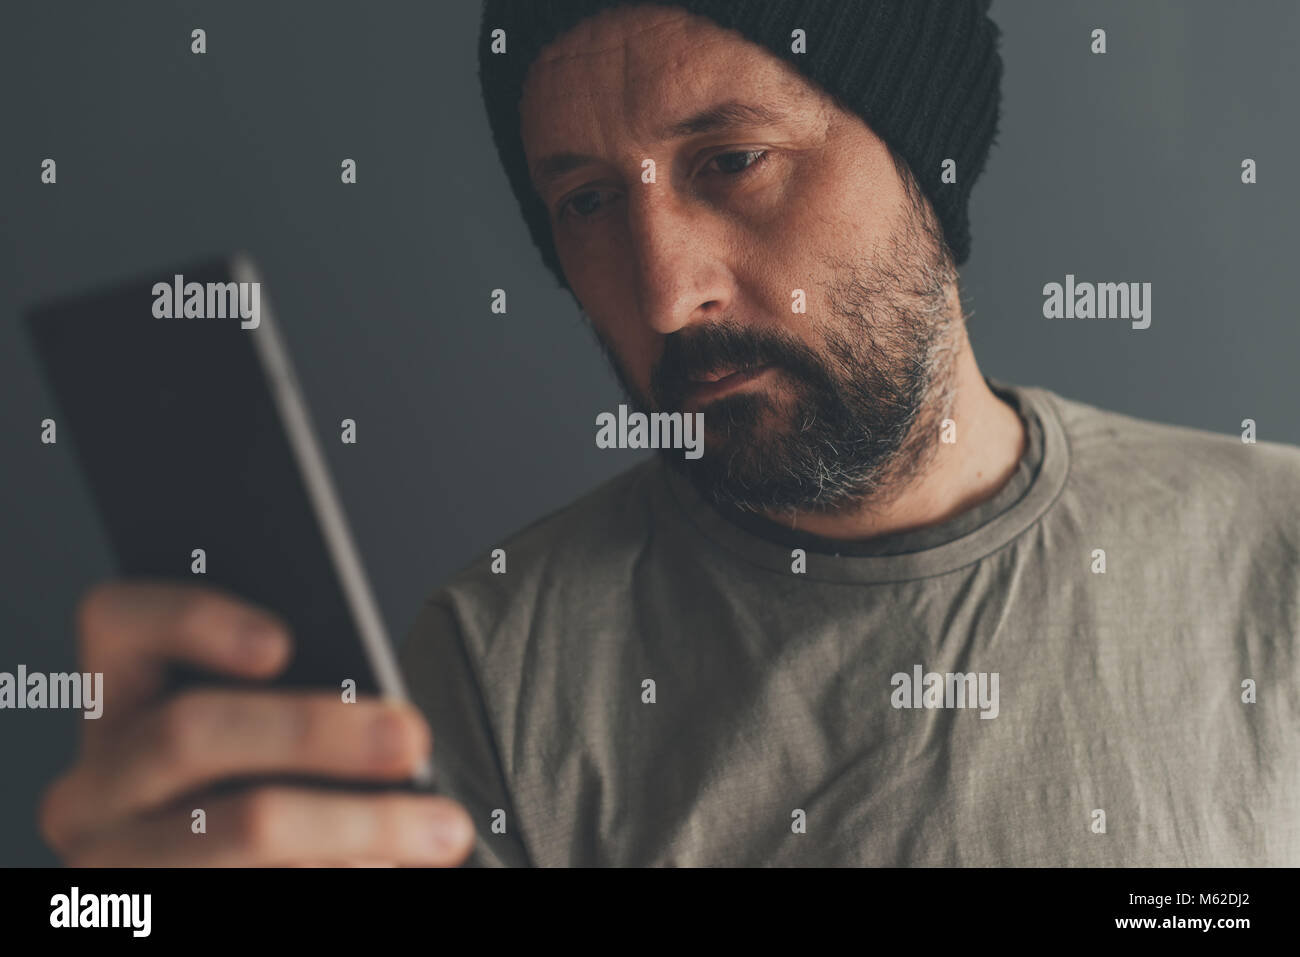 Casual erwachsenen Mann mit Kappe am Handy suchen, Low Key Kommunikation und Lifestyle Portrait mit selektiven Fokus Stockfoto